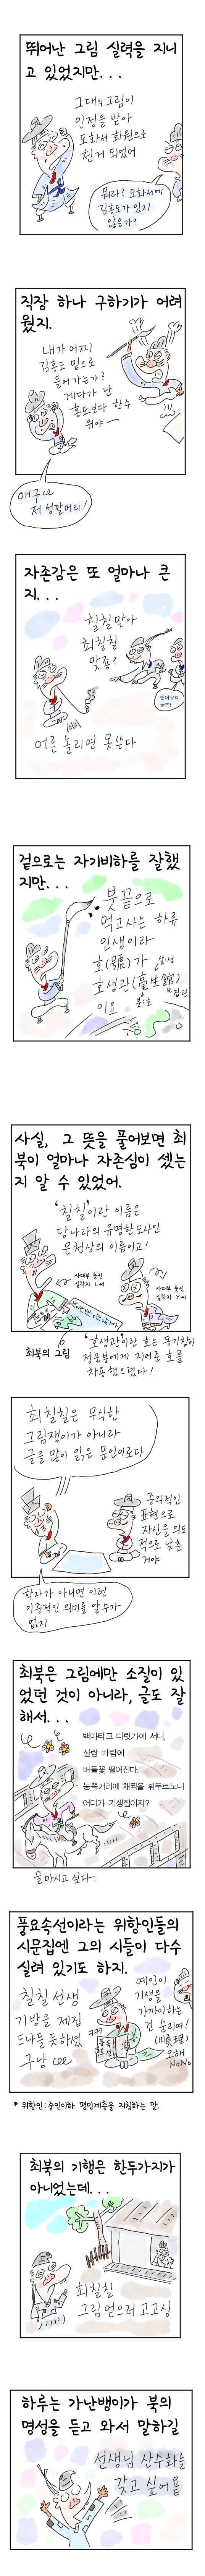 [역사툰] 史(사)람 이야기 21화: 광기의 천재 화가, 최북

